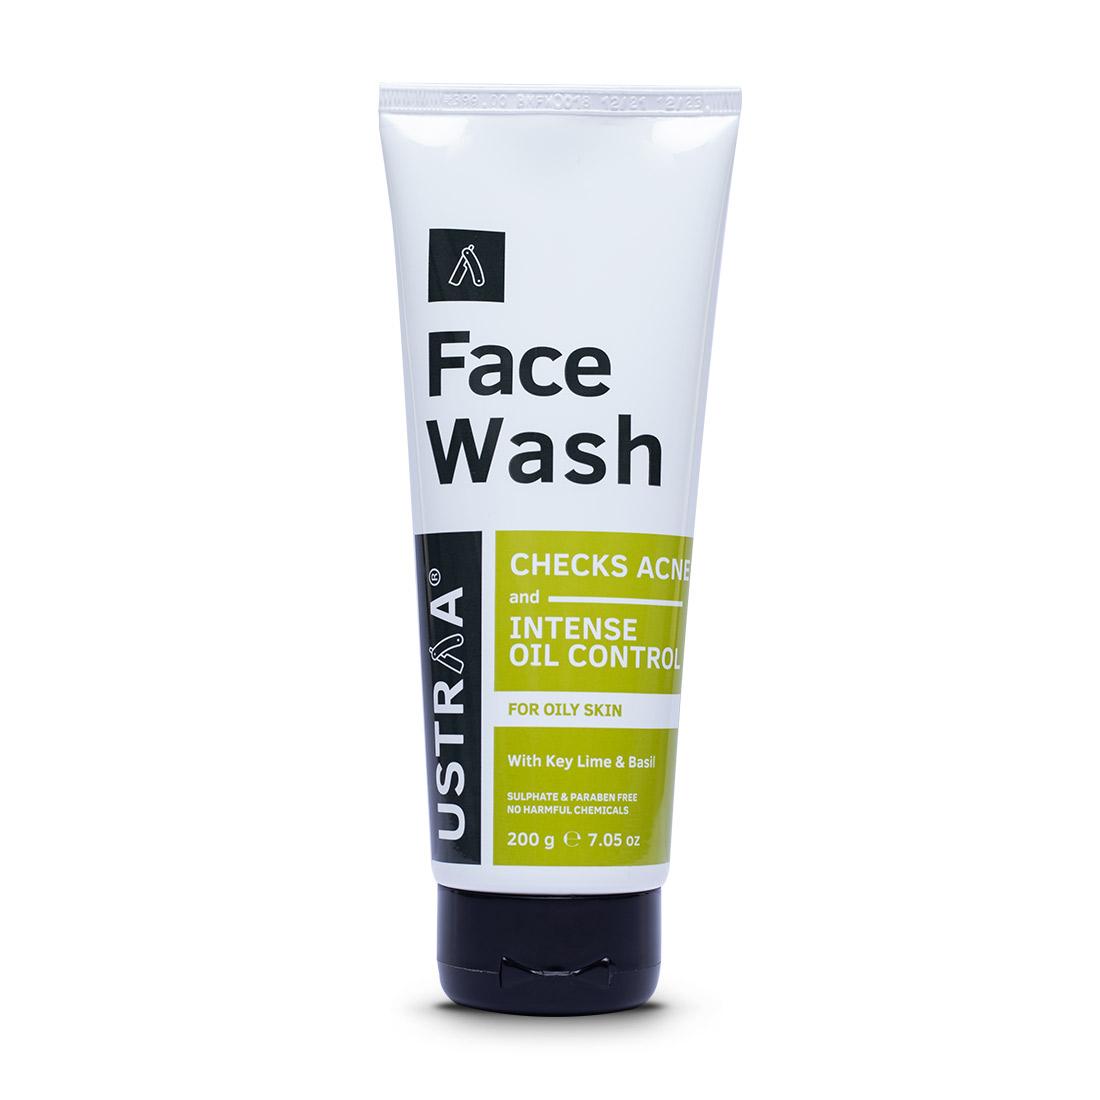 Face Wash - Oily Skin (Checks Acne & Oil Control) - 200g